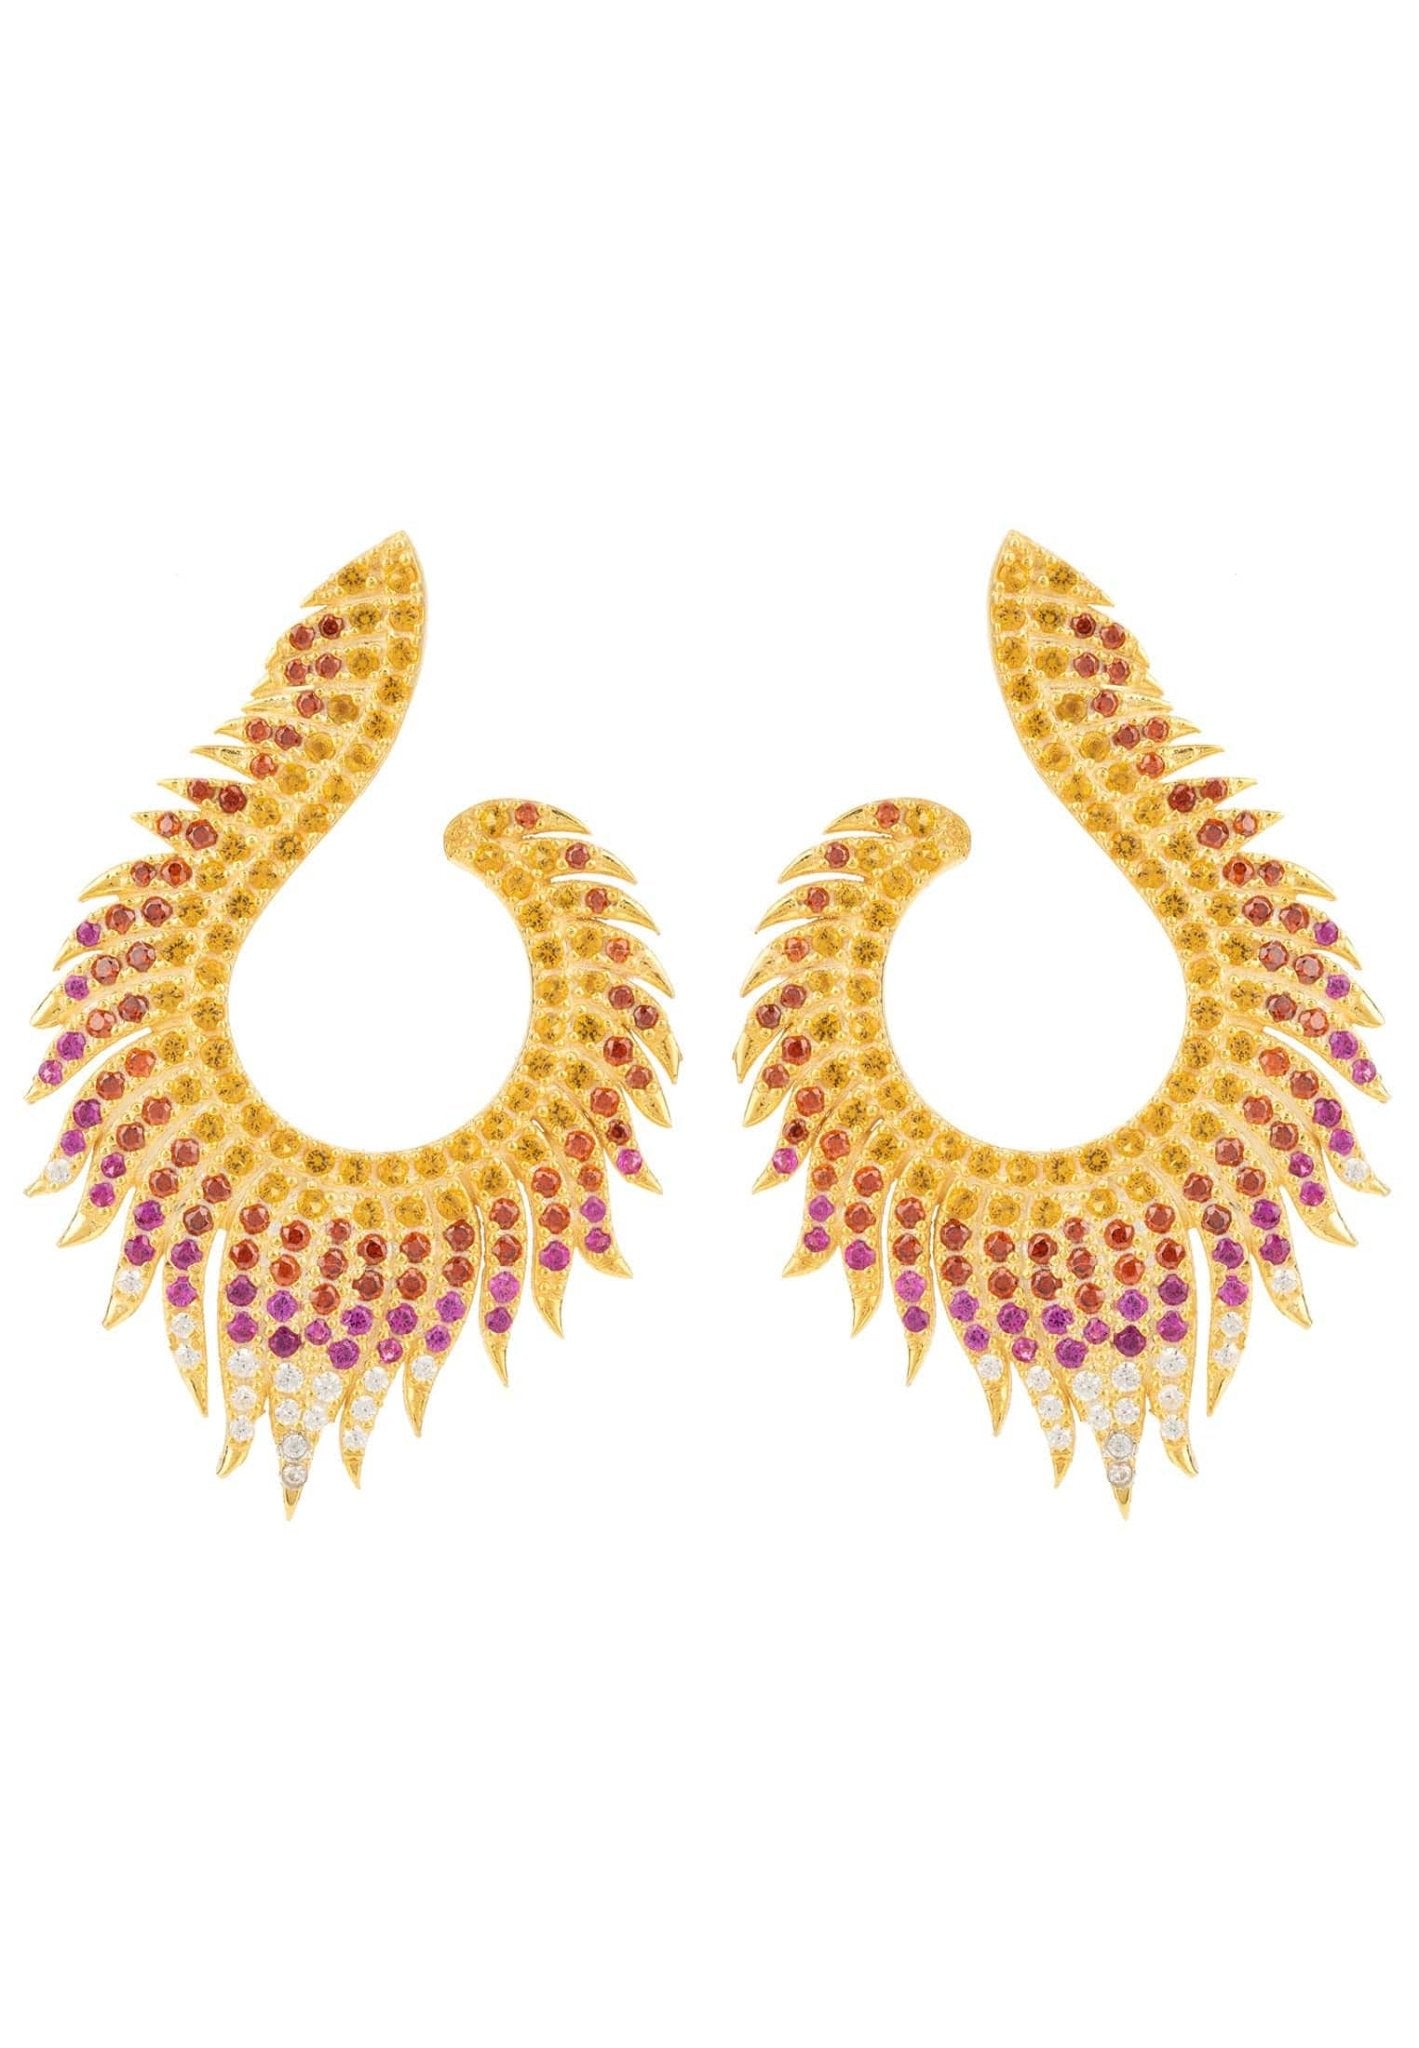 Flame Earrings Golden Fire Gold - LATELITA Earrings